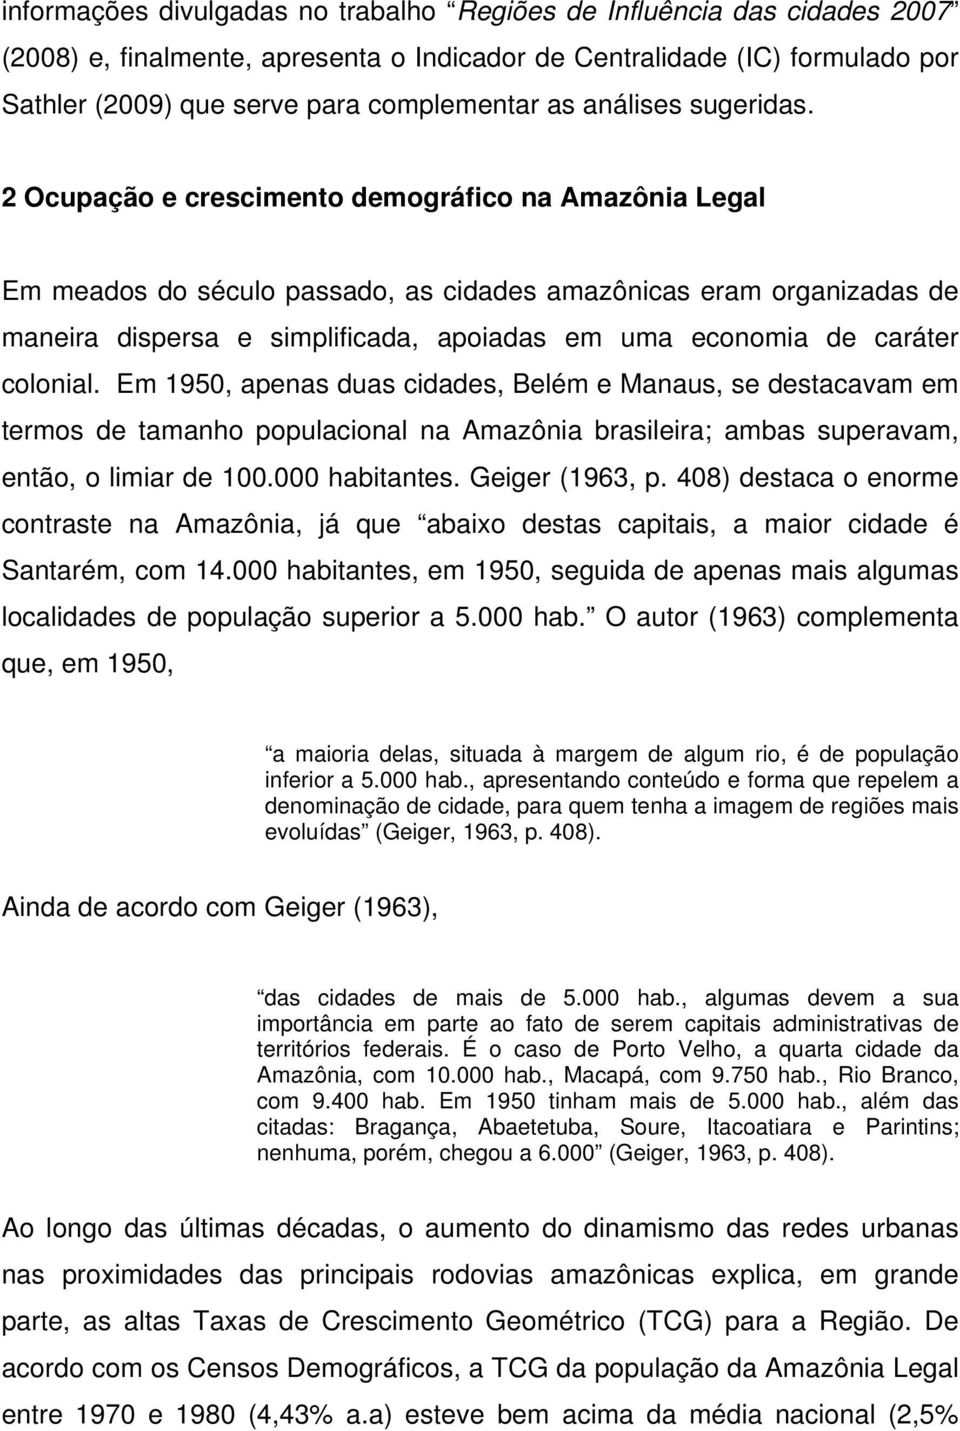 2 Ocupação e crescimento demográfico na Amazônia Legal Em meados do século passado, as cidades amazônicas eram organizadas de maneira dispersa e simplificada, apoiadas em uma economia de caráter